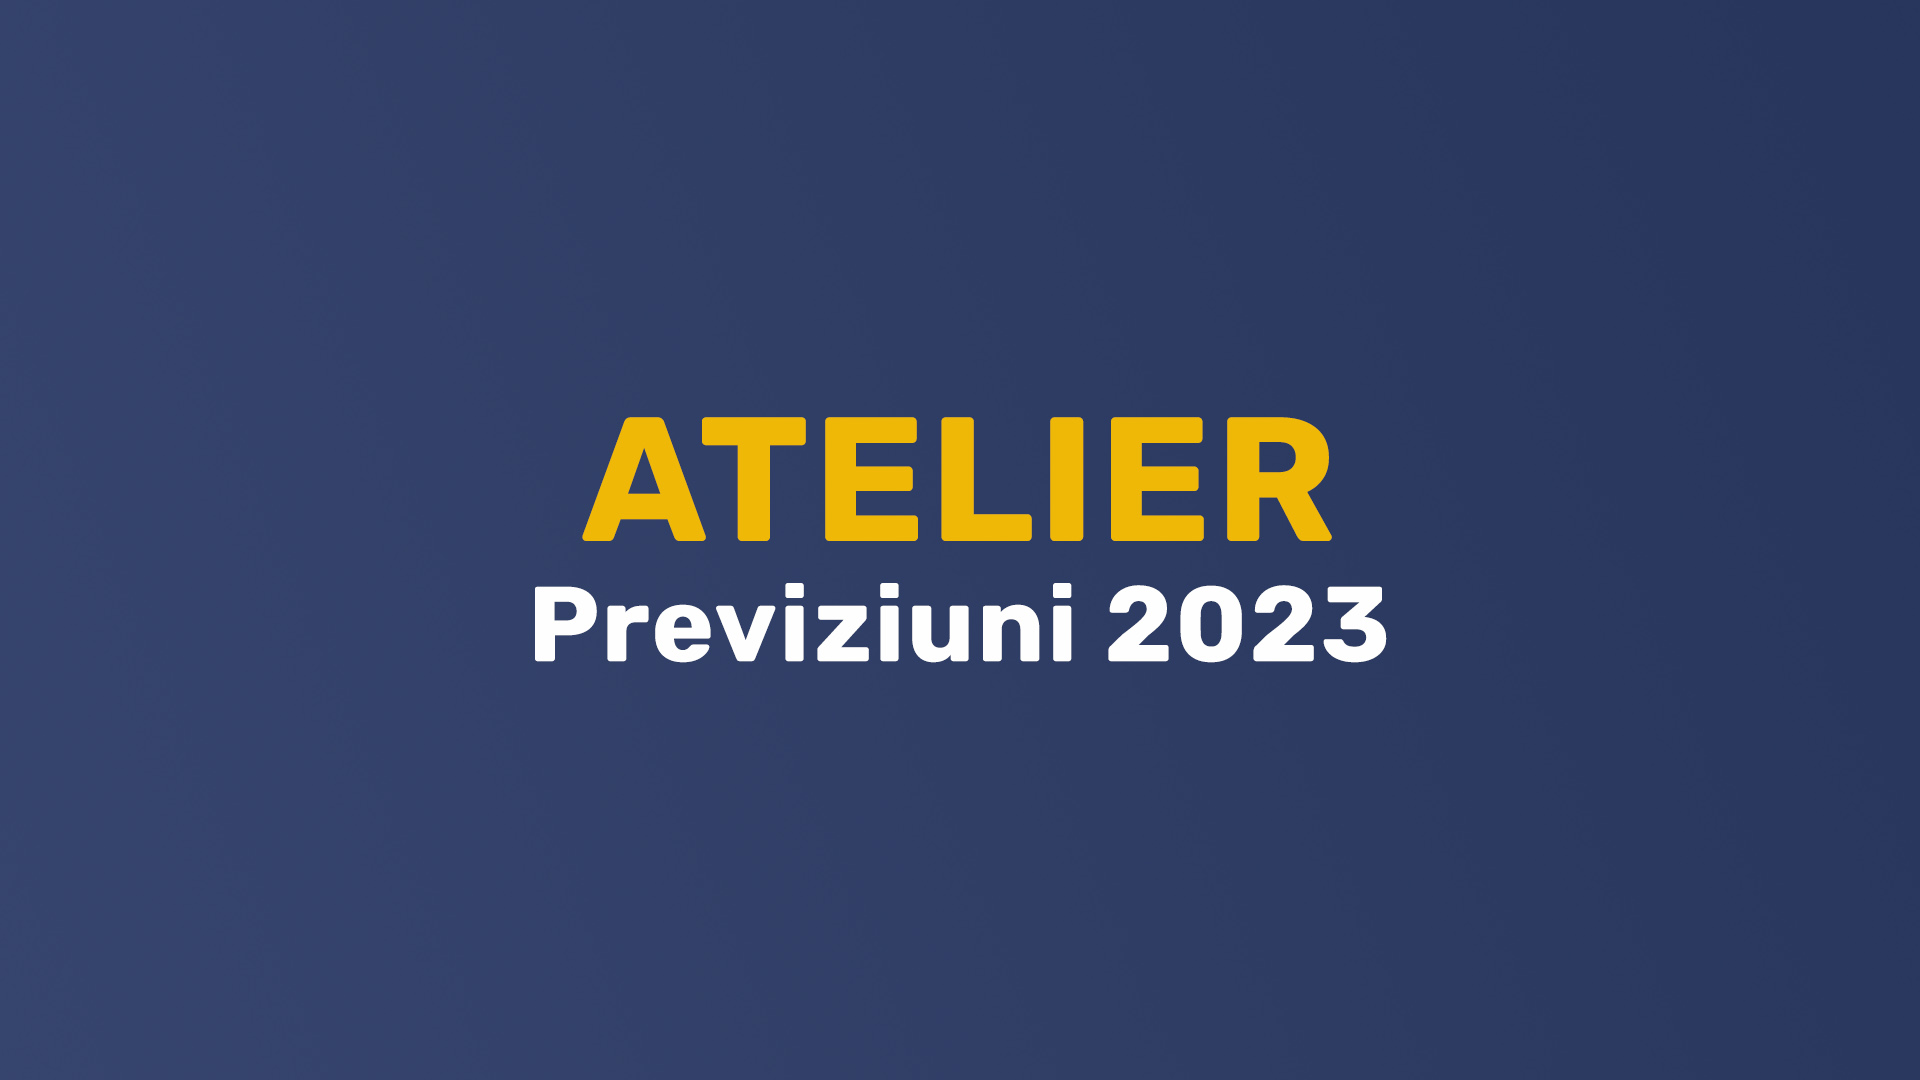 Atelier – Previziuni 2023